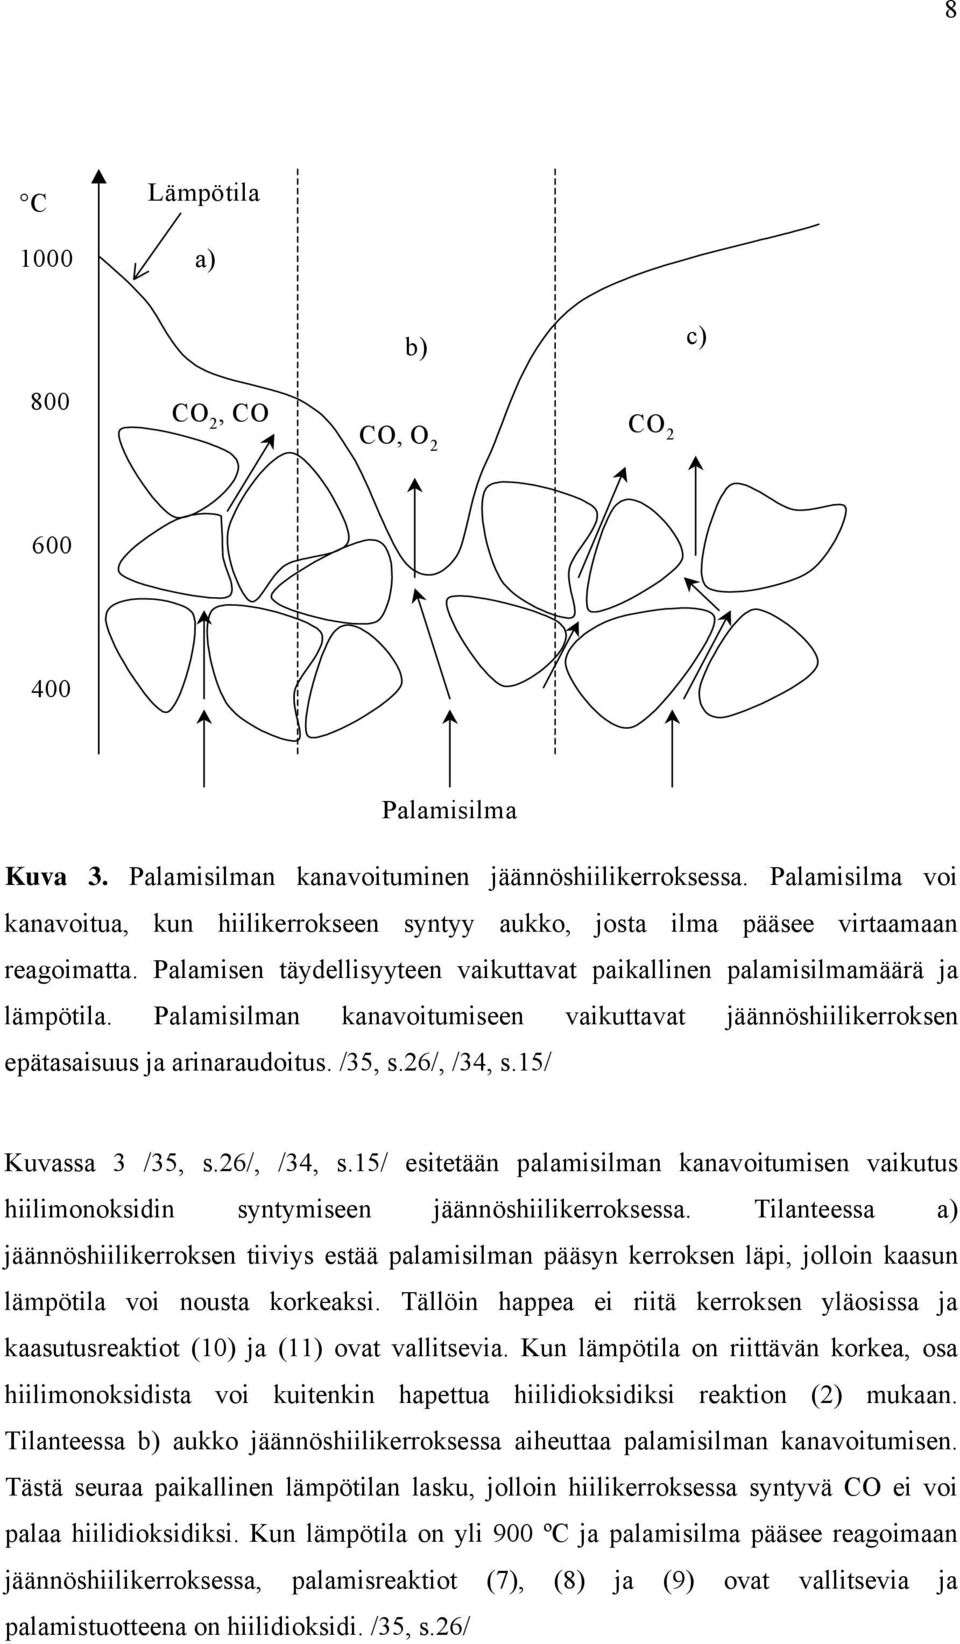 Palamisilman kanavoitumiseen vaikuttavat jäännöshiilikerroksen epätasaisuus ja arinaraudoitus. /35, s.6/, /34, s.